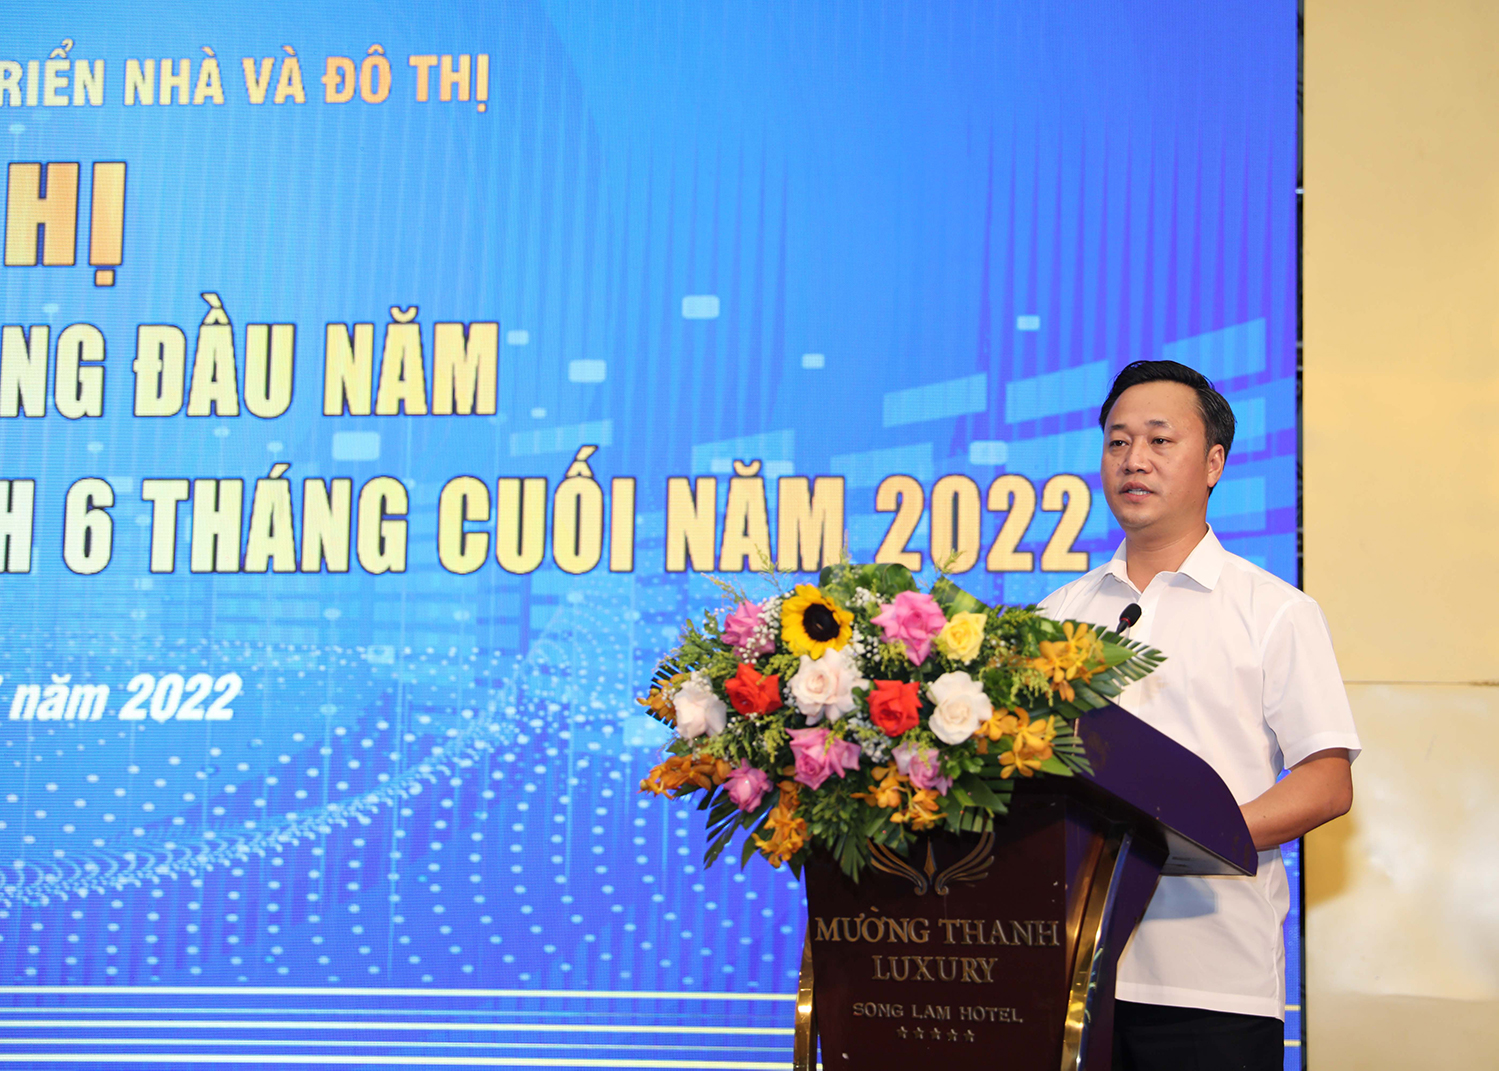 Đồng chí Nguyễn Việt Hùng, Bí thư Đảng uỷ, Chủ tịch HĐTV Tổng công ty Đầu tư phát triển nhà và đô thị phát biểu kết luận Hội nghị.